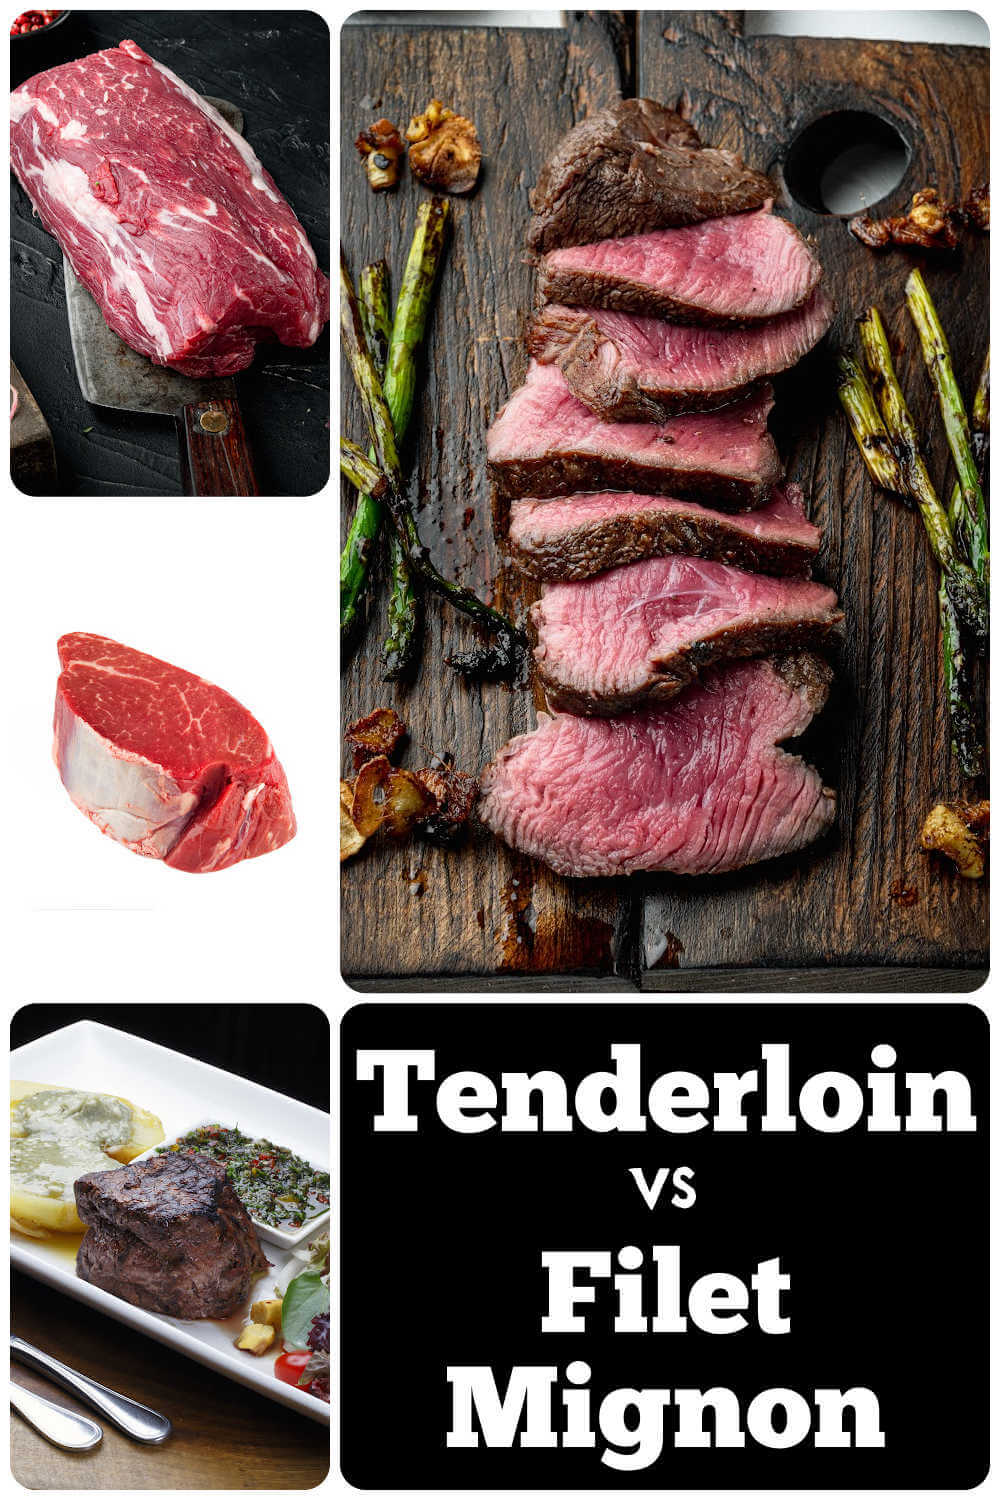 Tenderloin vs. Filet Mignon